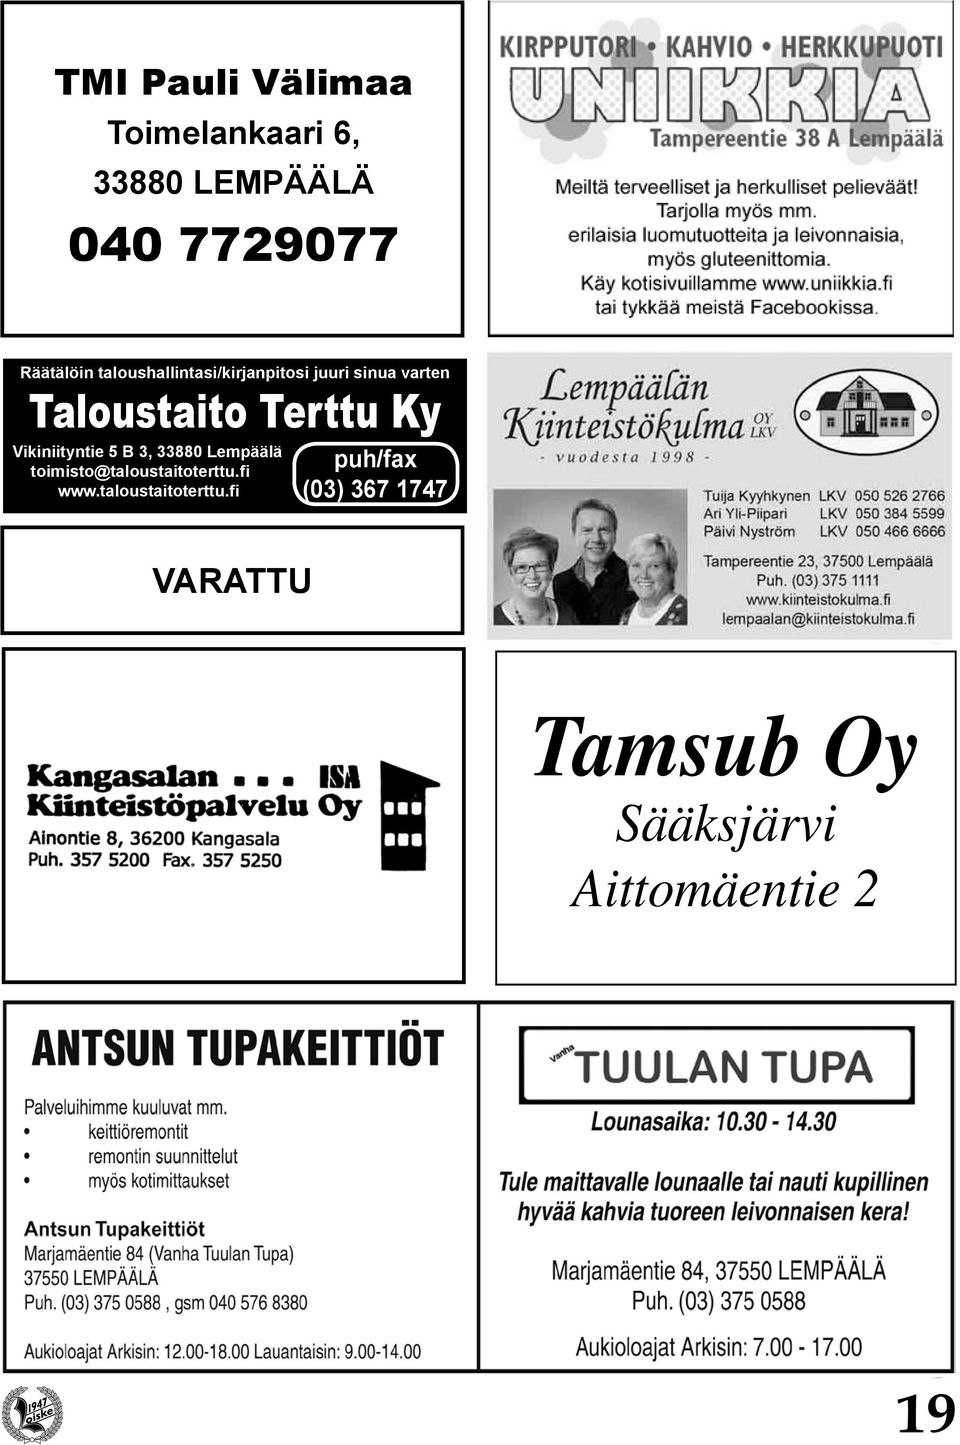 Vikiniityntie 5 B 3, 33880 Lempäälä toimisto@taloustaitoterttu.fi www.